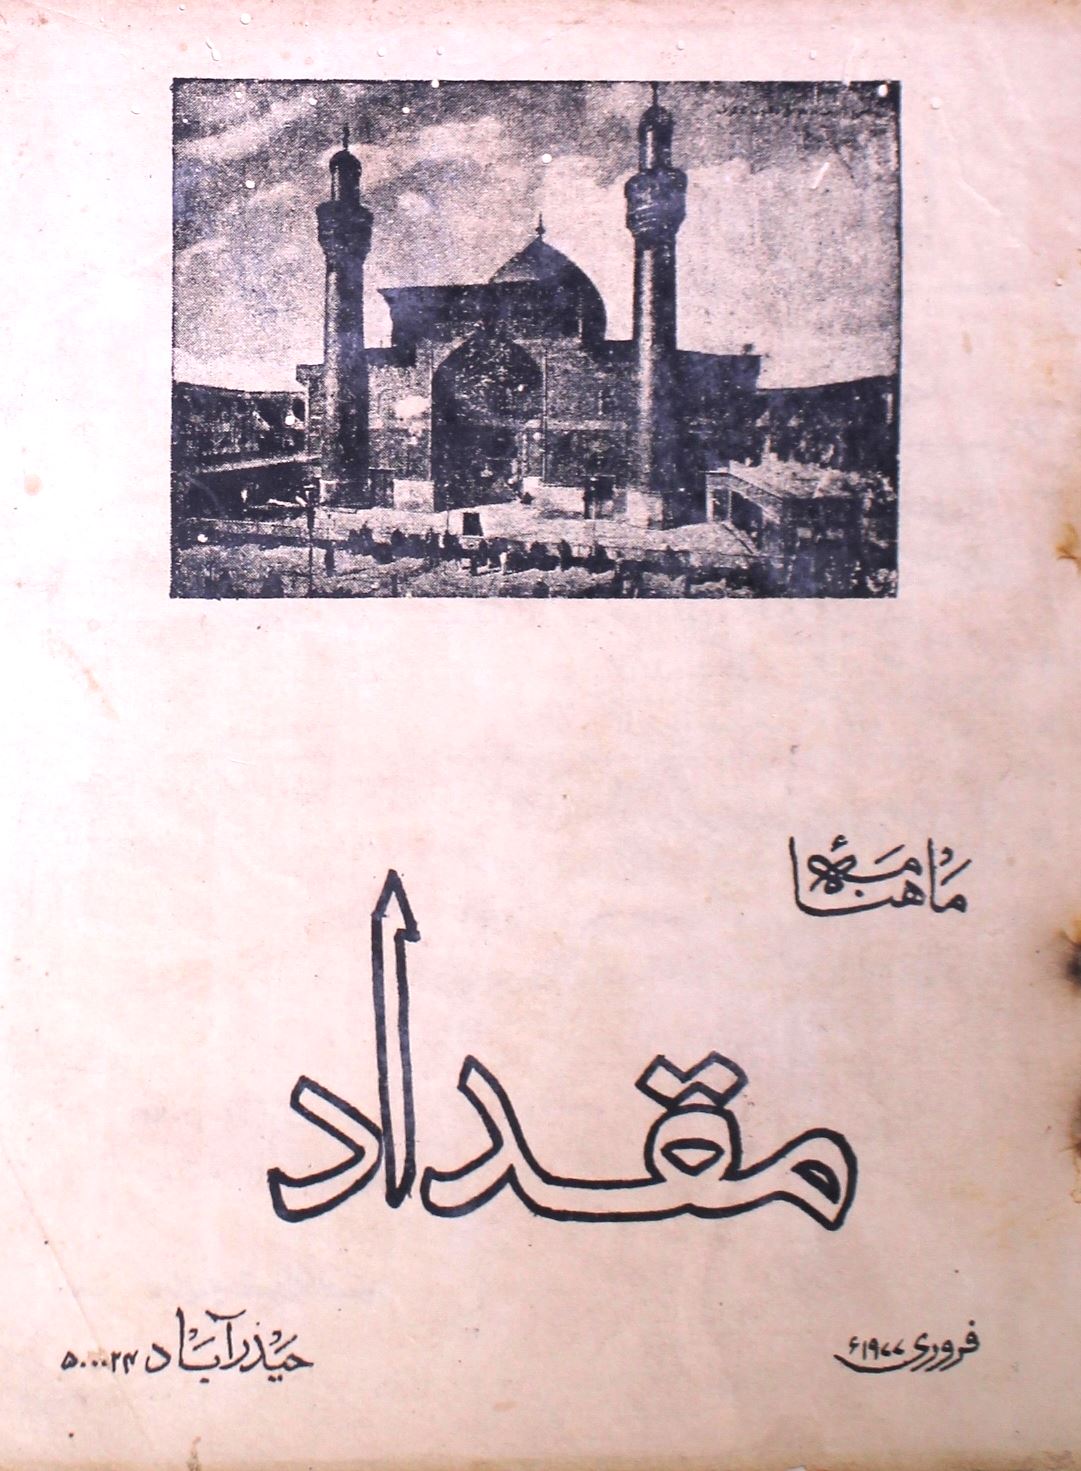 Mukadar Jild.1 No.3 Feb 1977-SVK